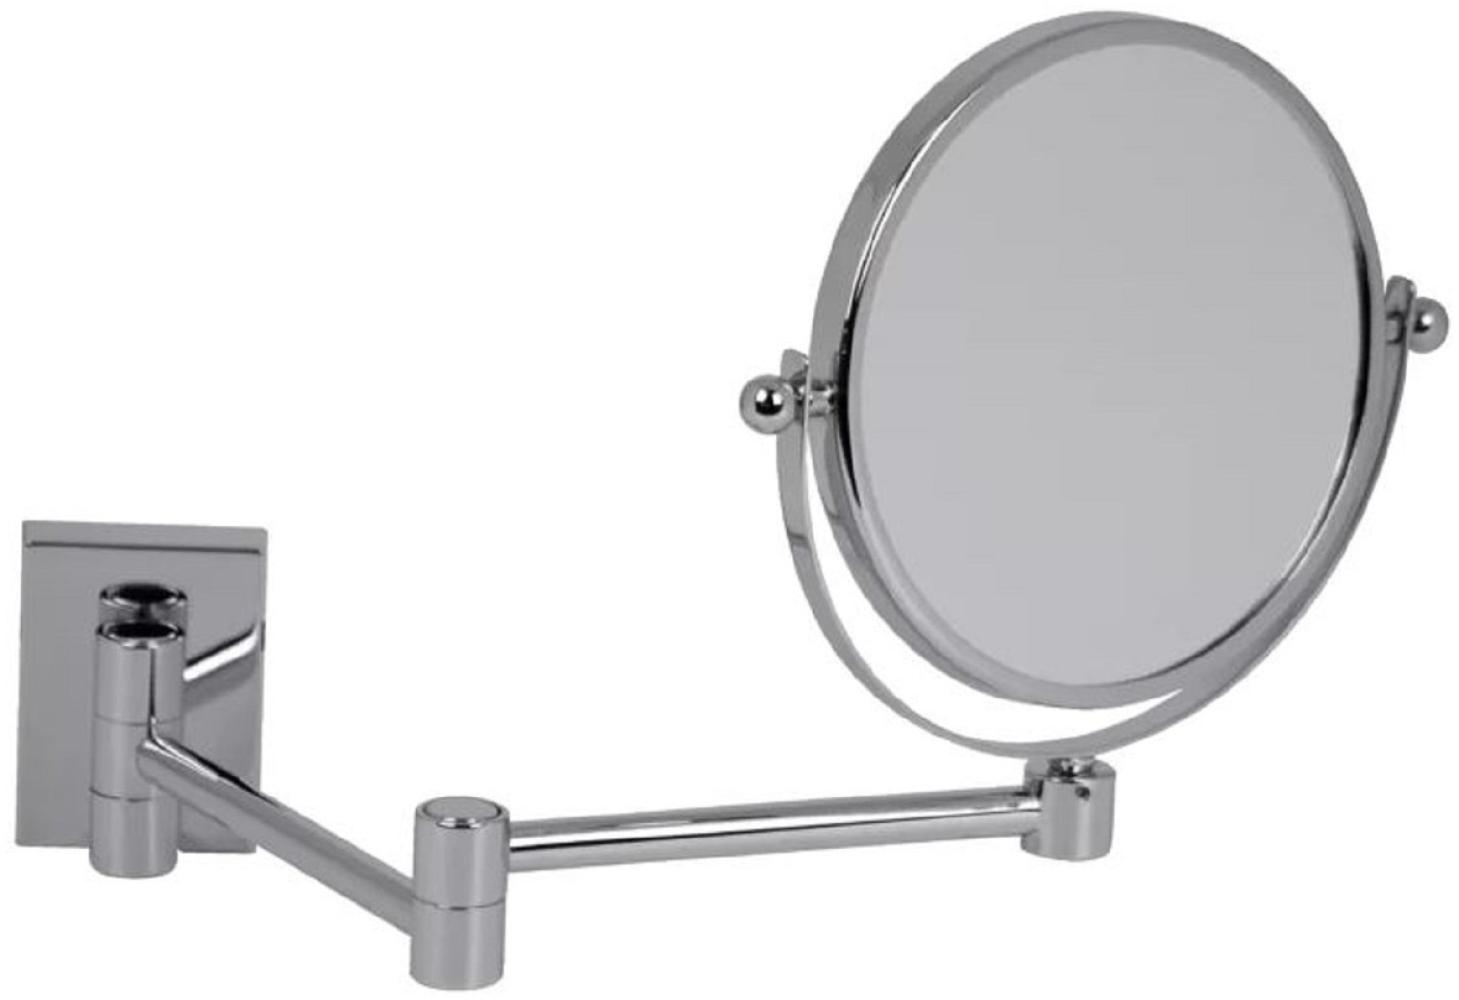 Casa Padrino Luxus Kosmetik Spiegel Silber Ø 16 x 40 x H. 25 cm - Verstellbarer Kosmetik Wandspiegel - Badezimmer Schmink Spiegel - Badezimmer Accessoires - Luxus Qualität - Made in Italy Bild 1